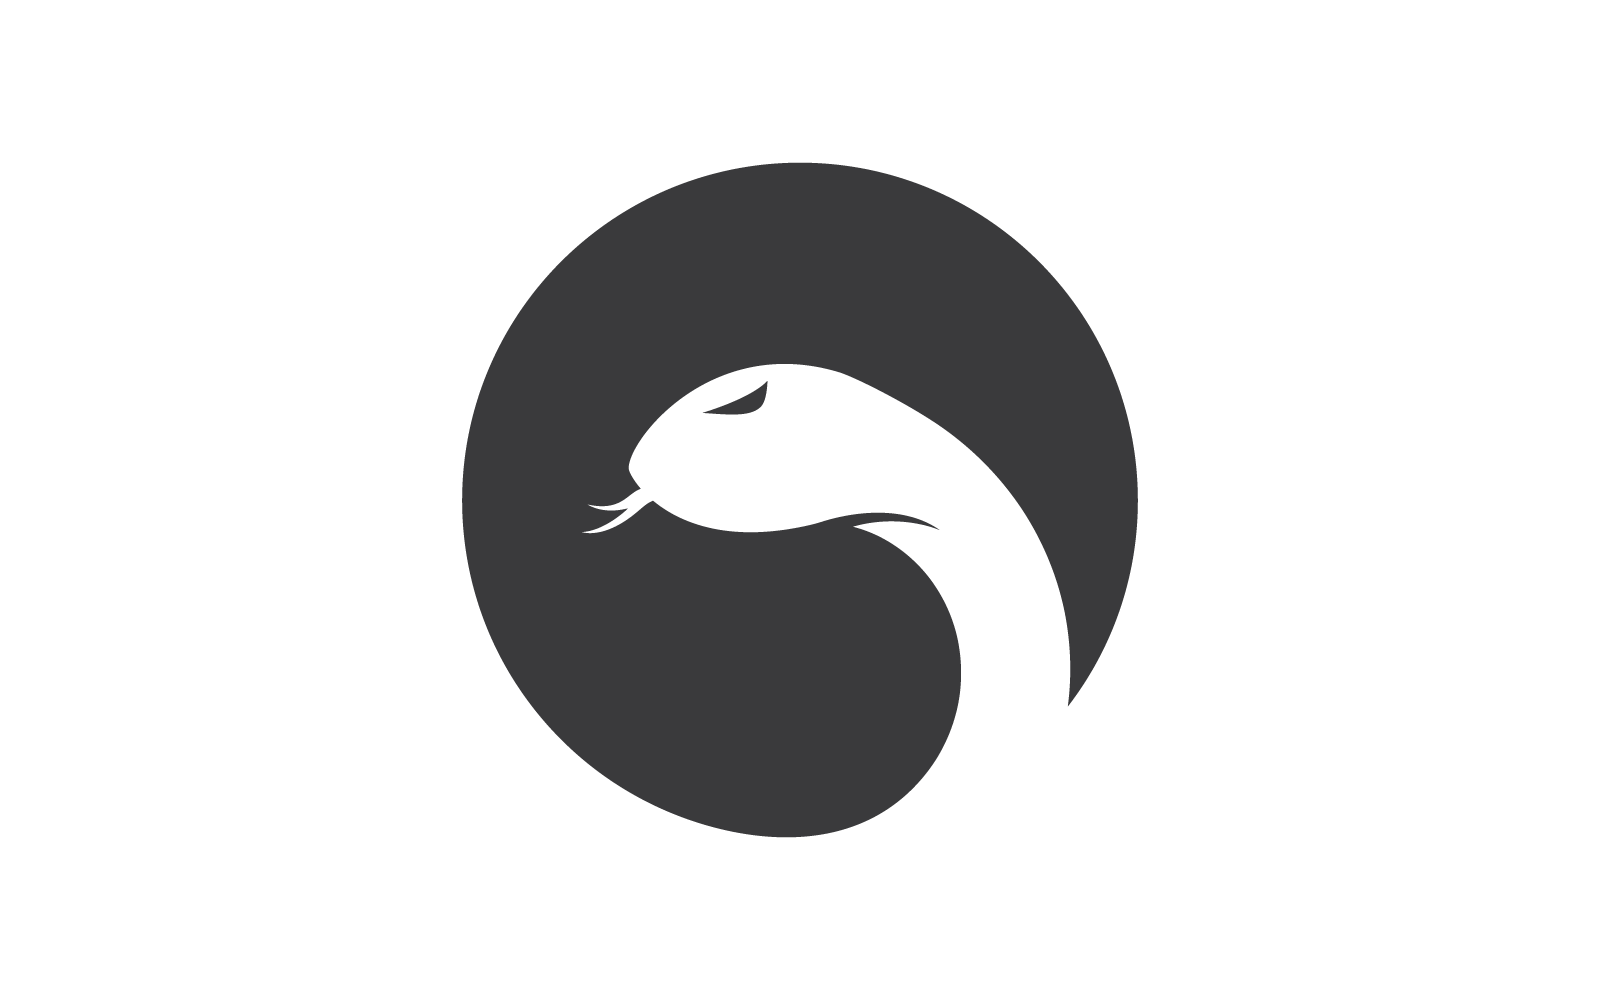 Modello di disegno vettoriale dell'icona del logo del serpente